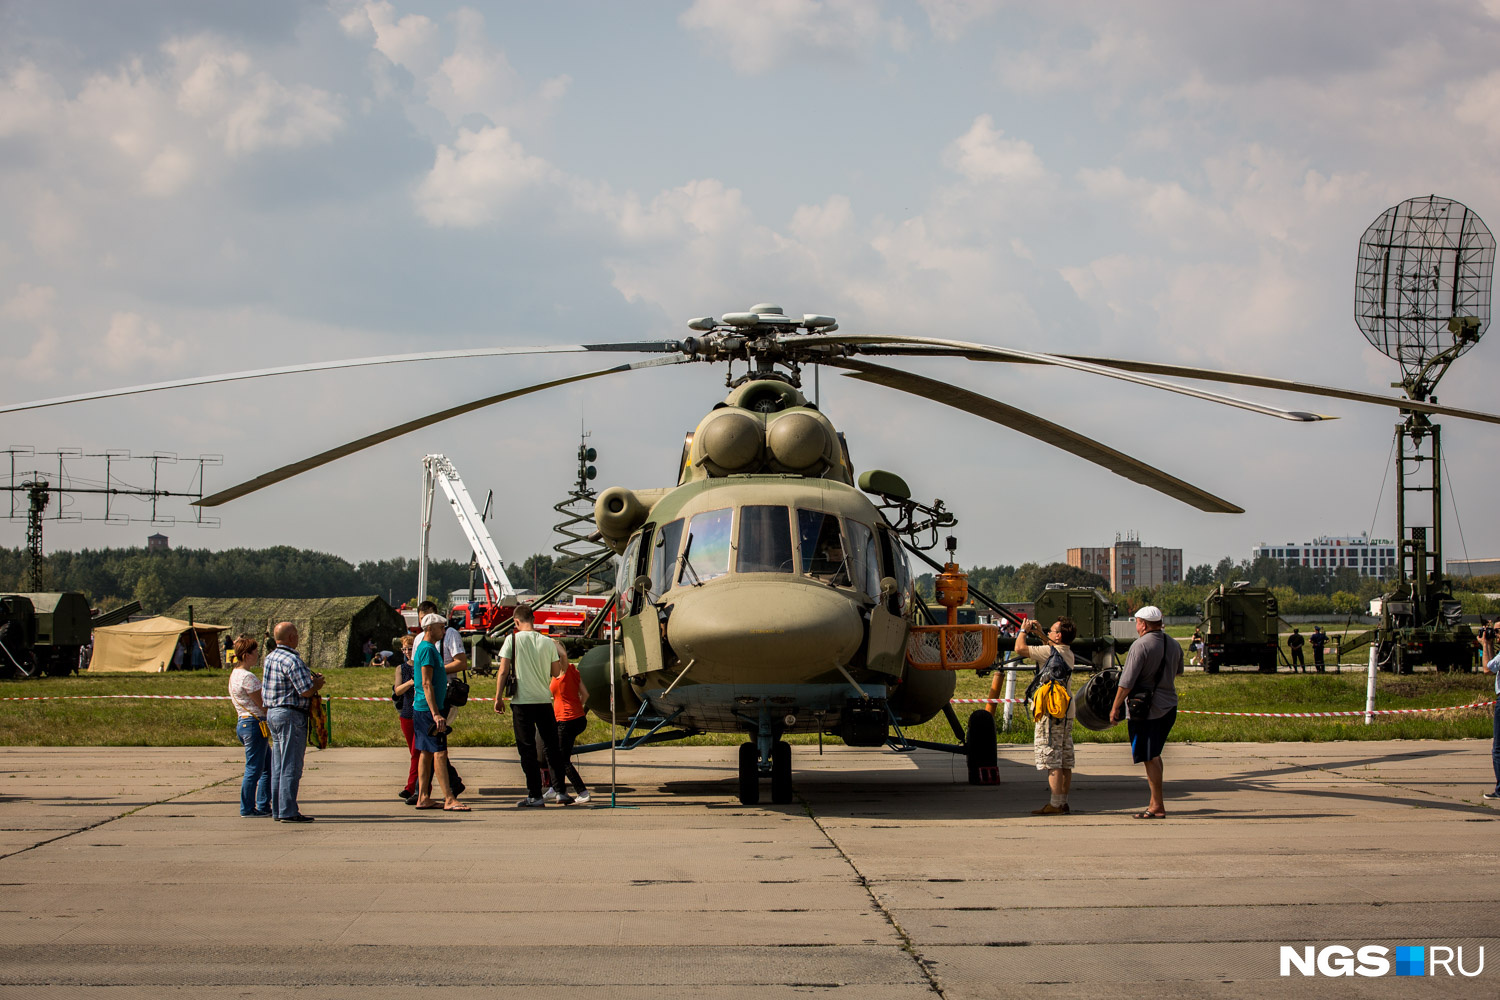 На выставке показывают и авиатехнику, например, вертолёт Ми-26 и самолёт Ан-12 и другие